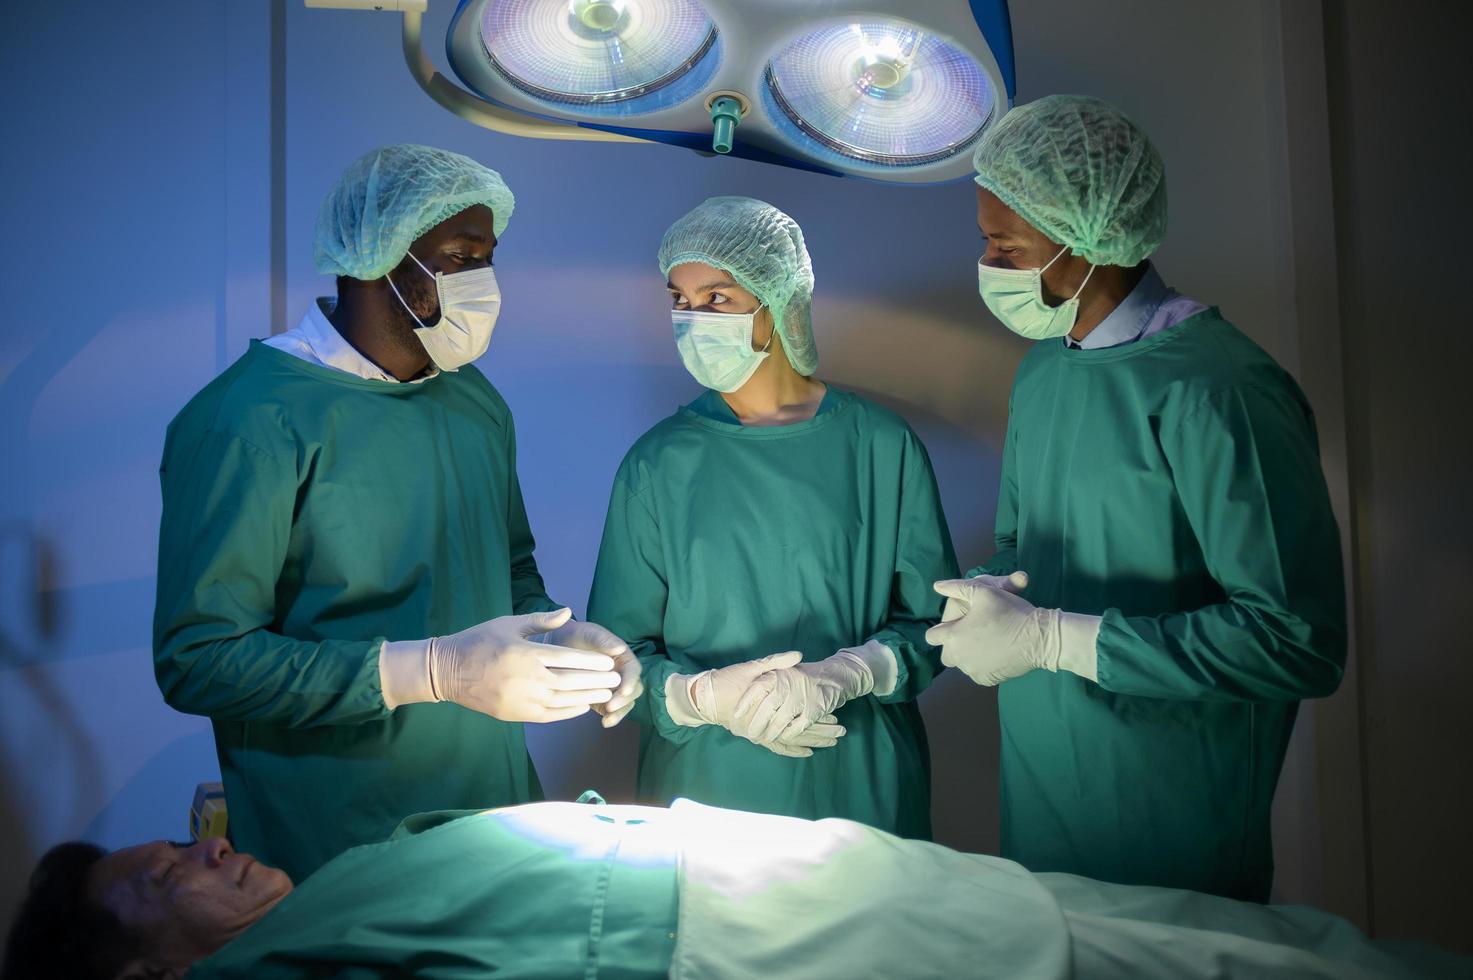 grupo de cirurgiões profissionais de raças mistas que operam na sala de cirurgia do hospital, conceito de cuidados de saúde. foto